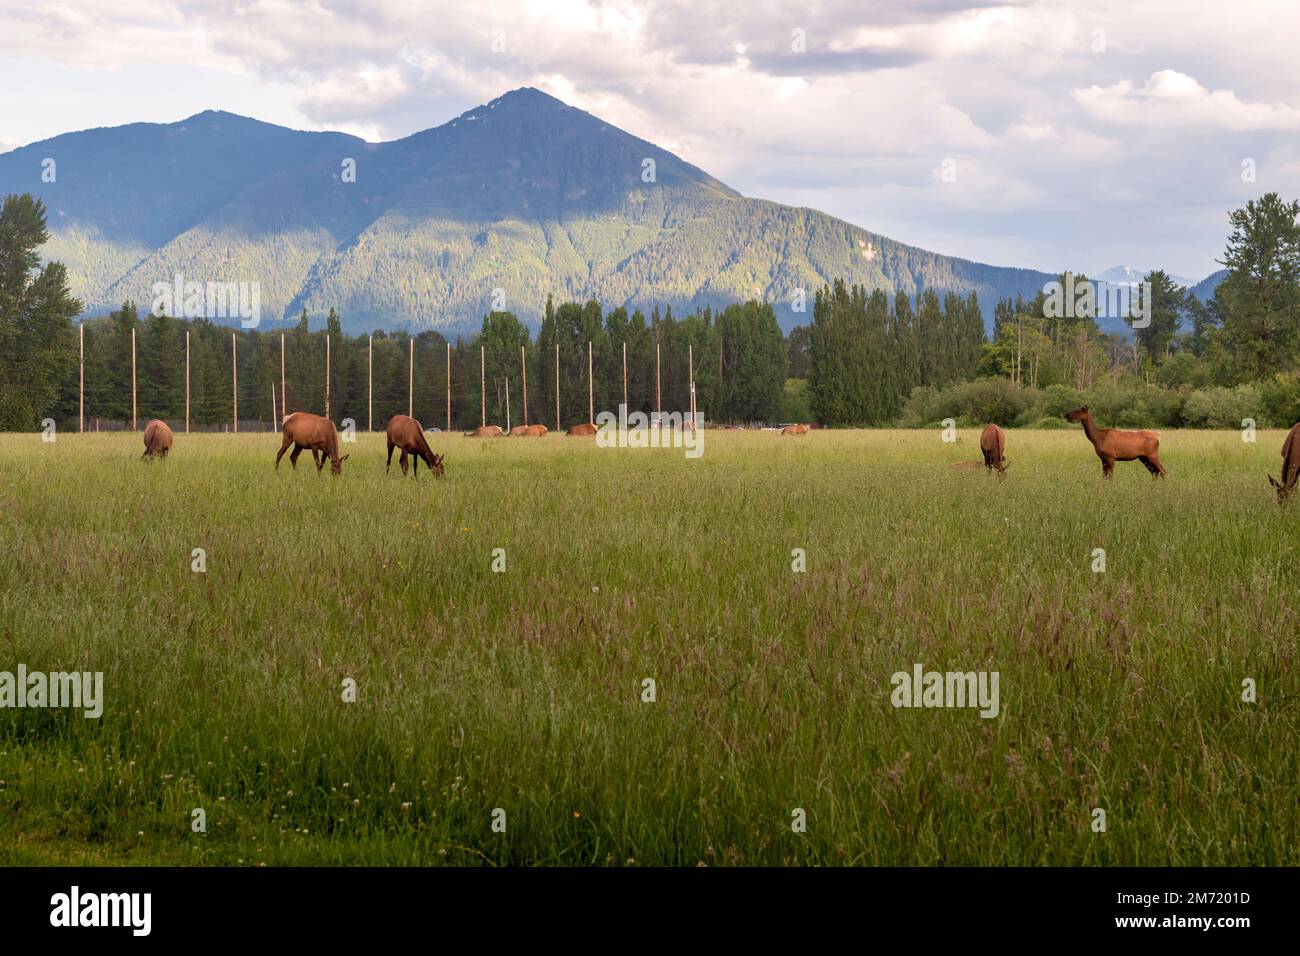 Eine Herde wilder Wapitis grast auf einem grasbedeckten Feld in North Bend, Washington, USA. Stockfoto